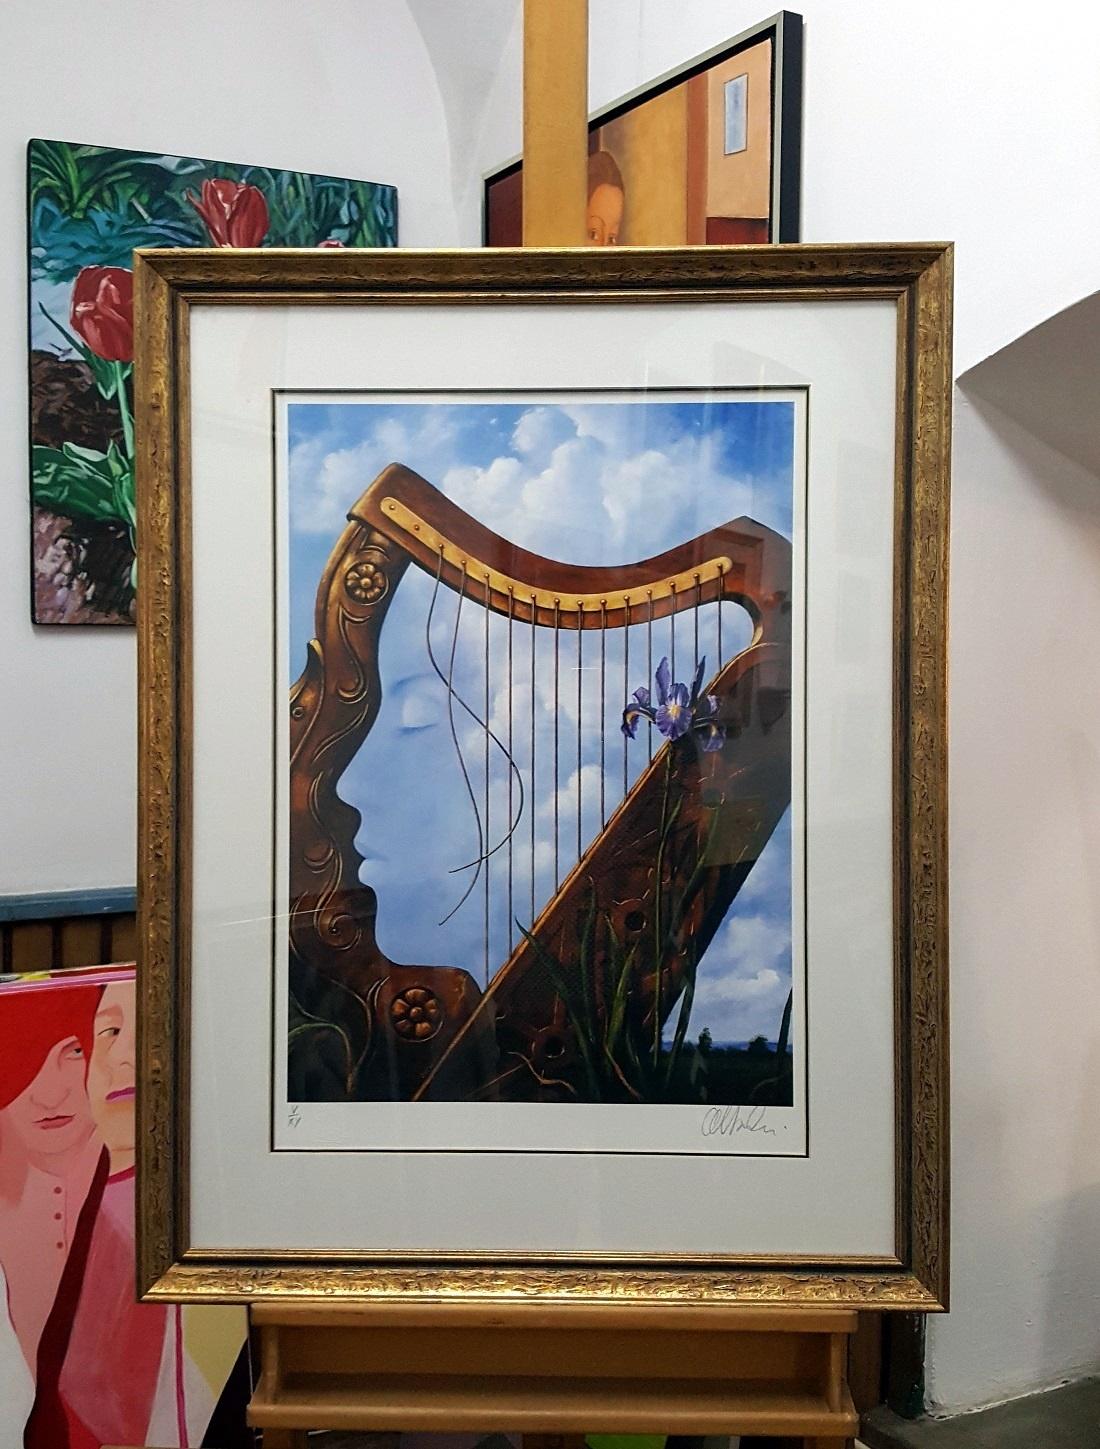 A harp - XXI century, Figurative surrealist print, Musical instrument, Flowers - Print by Rafał Olbiński